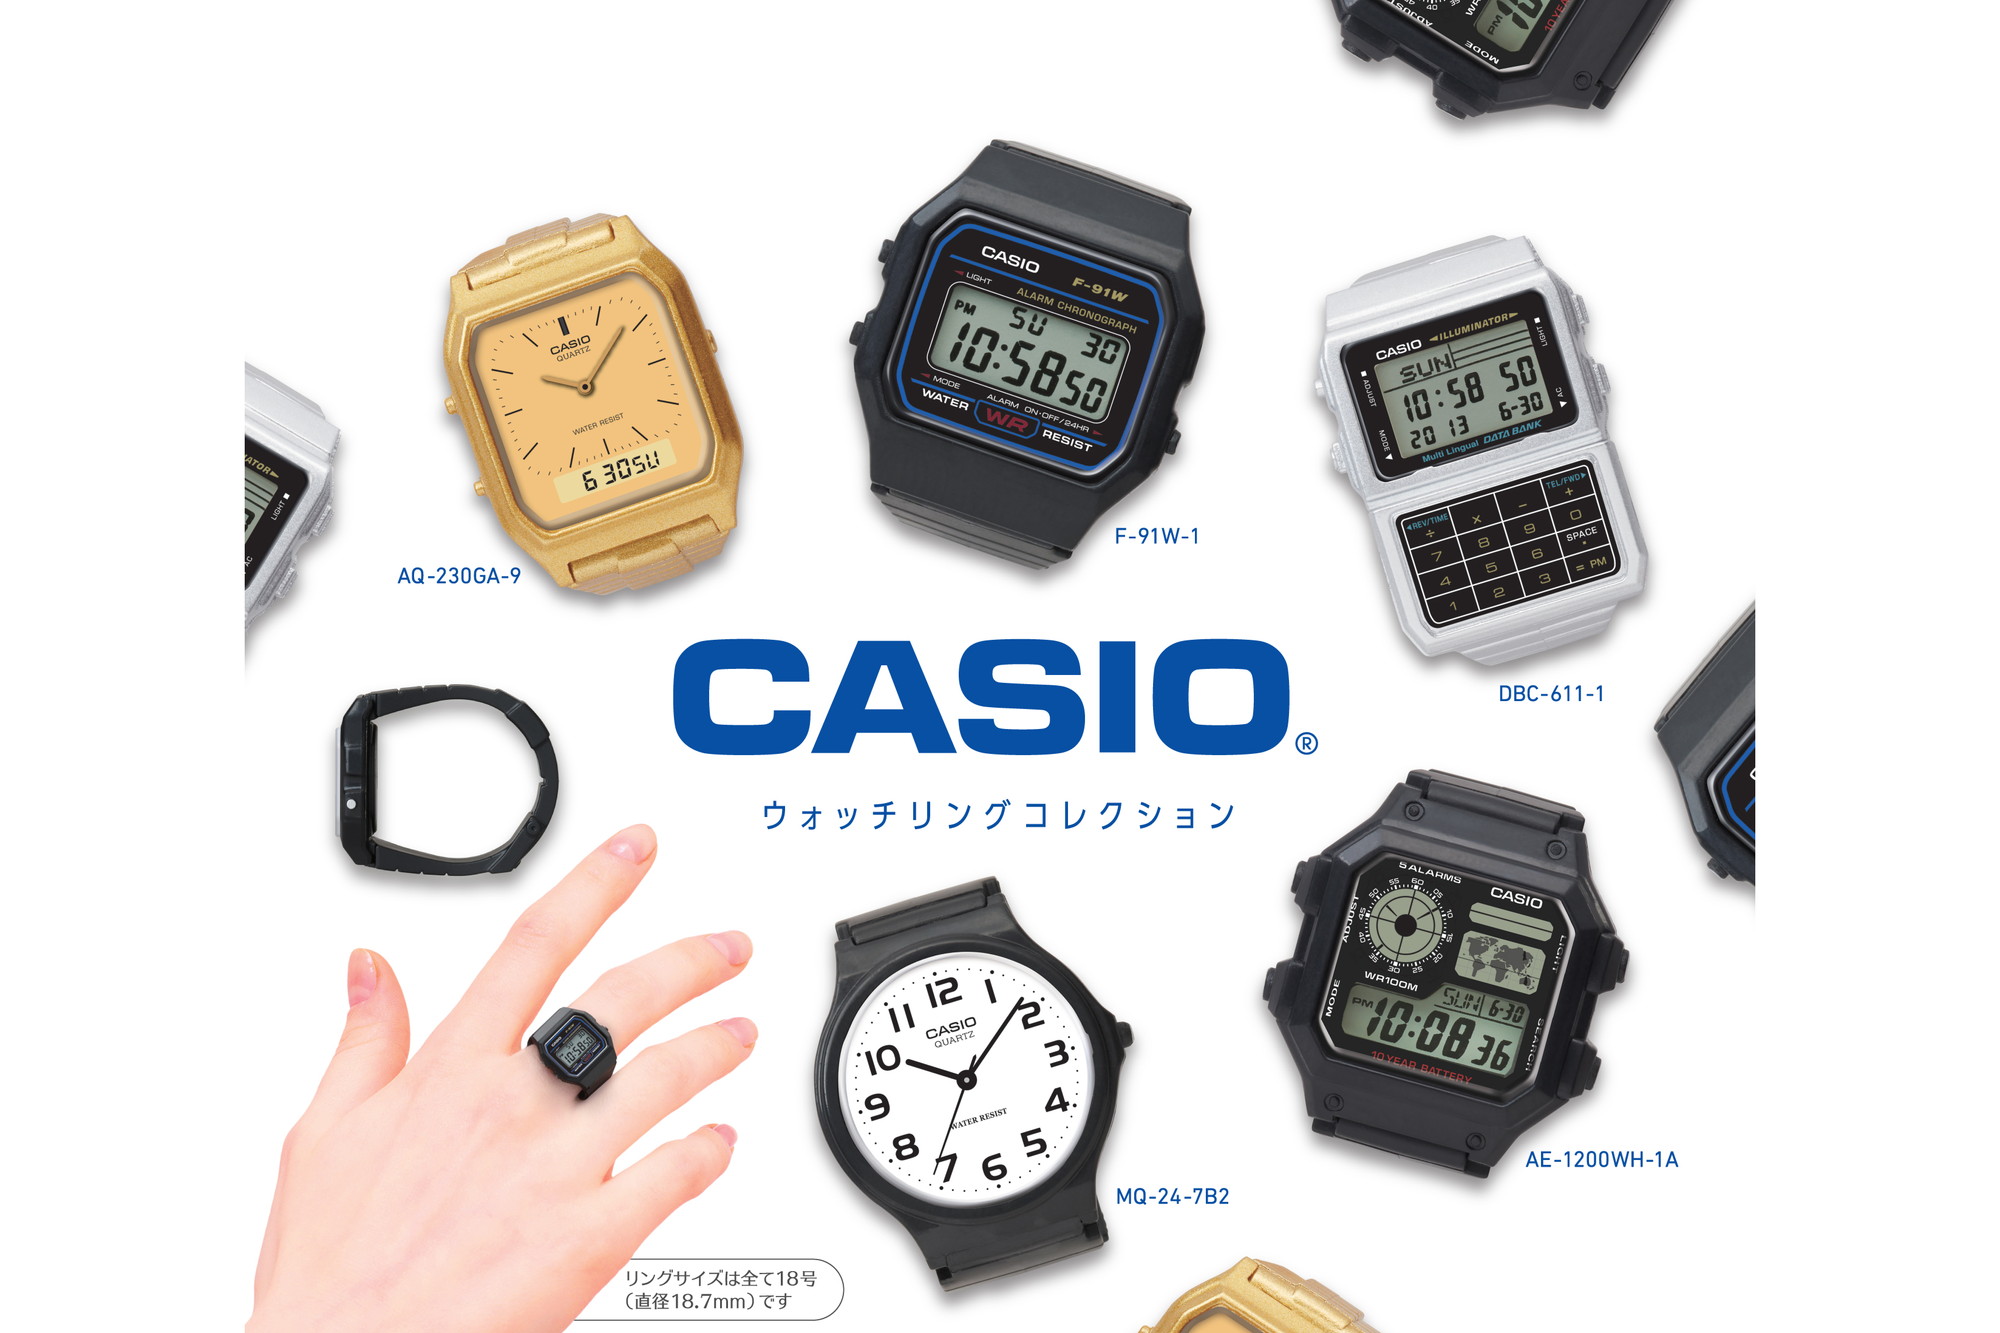 【色: カーキ】[カシオ] 腕時計 カシオ コレクション 【国内正規品】 F-9